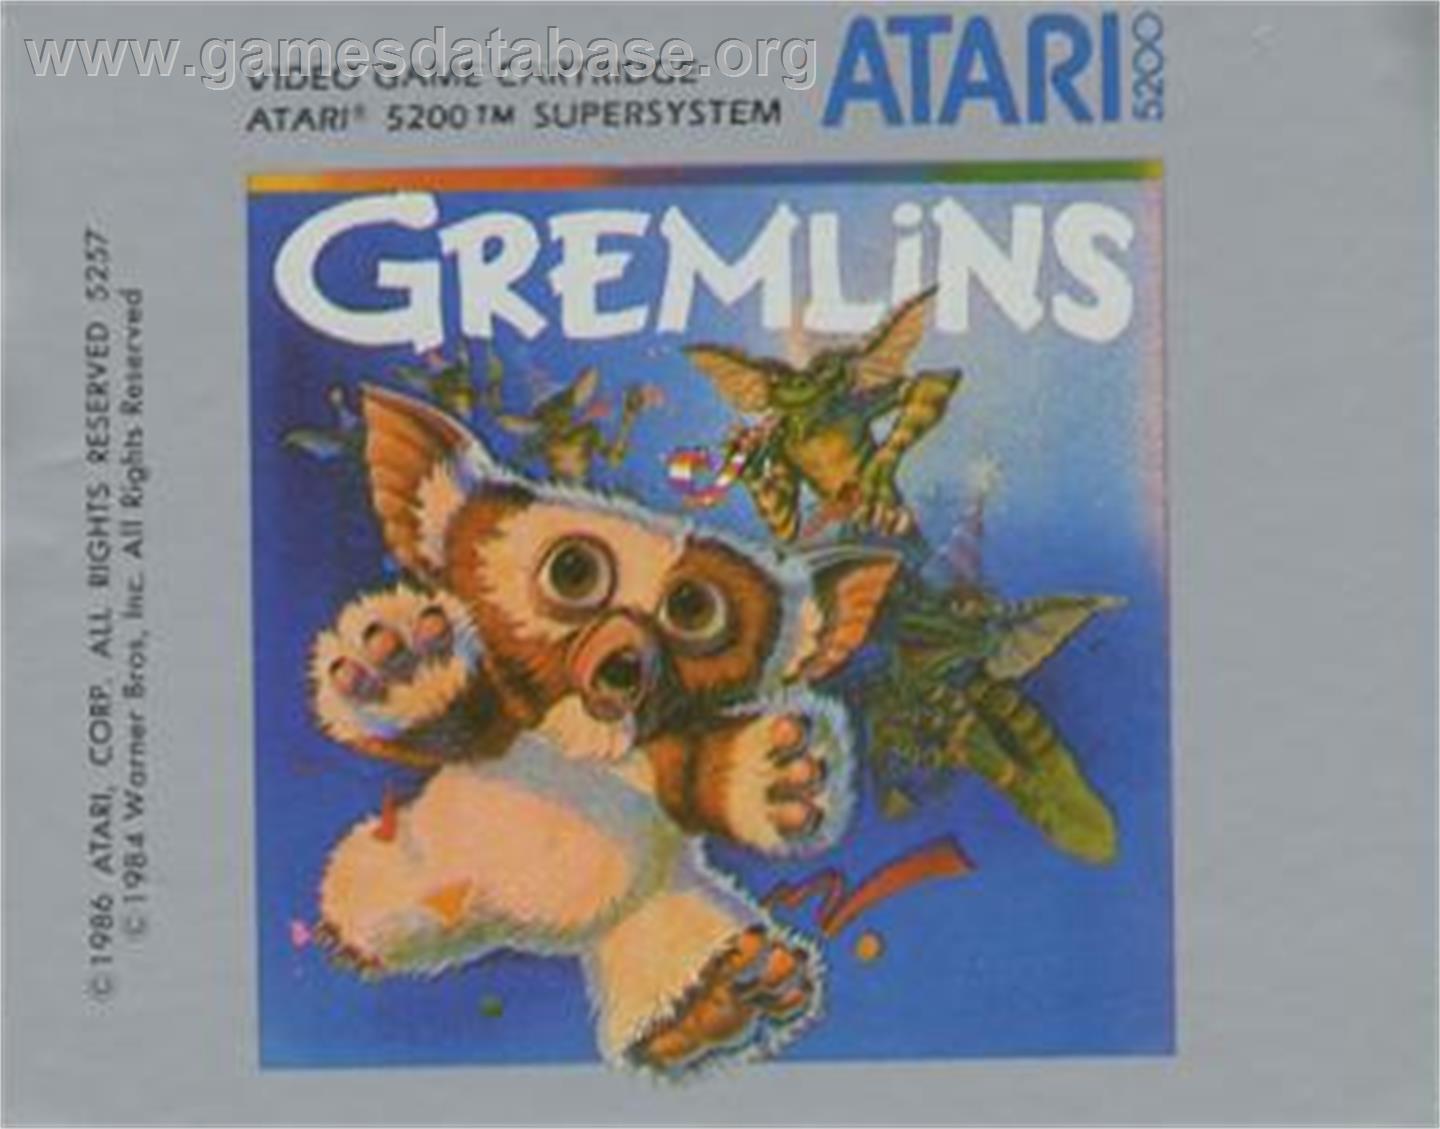 Gremlins - Atari 5200 - Artwork - Cartridge Top